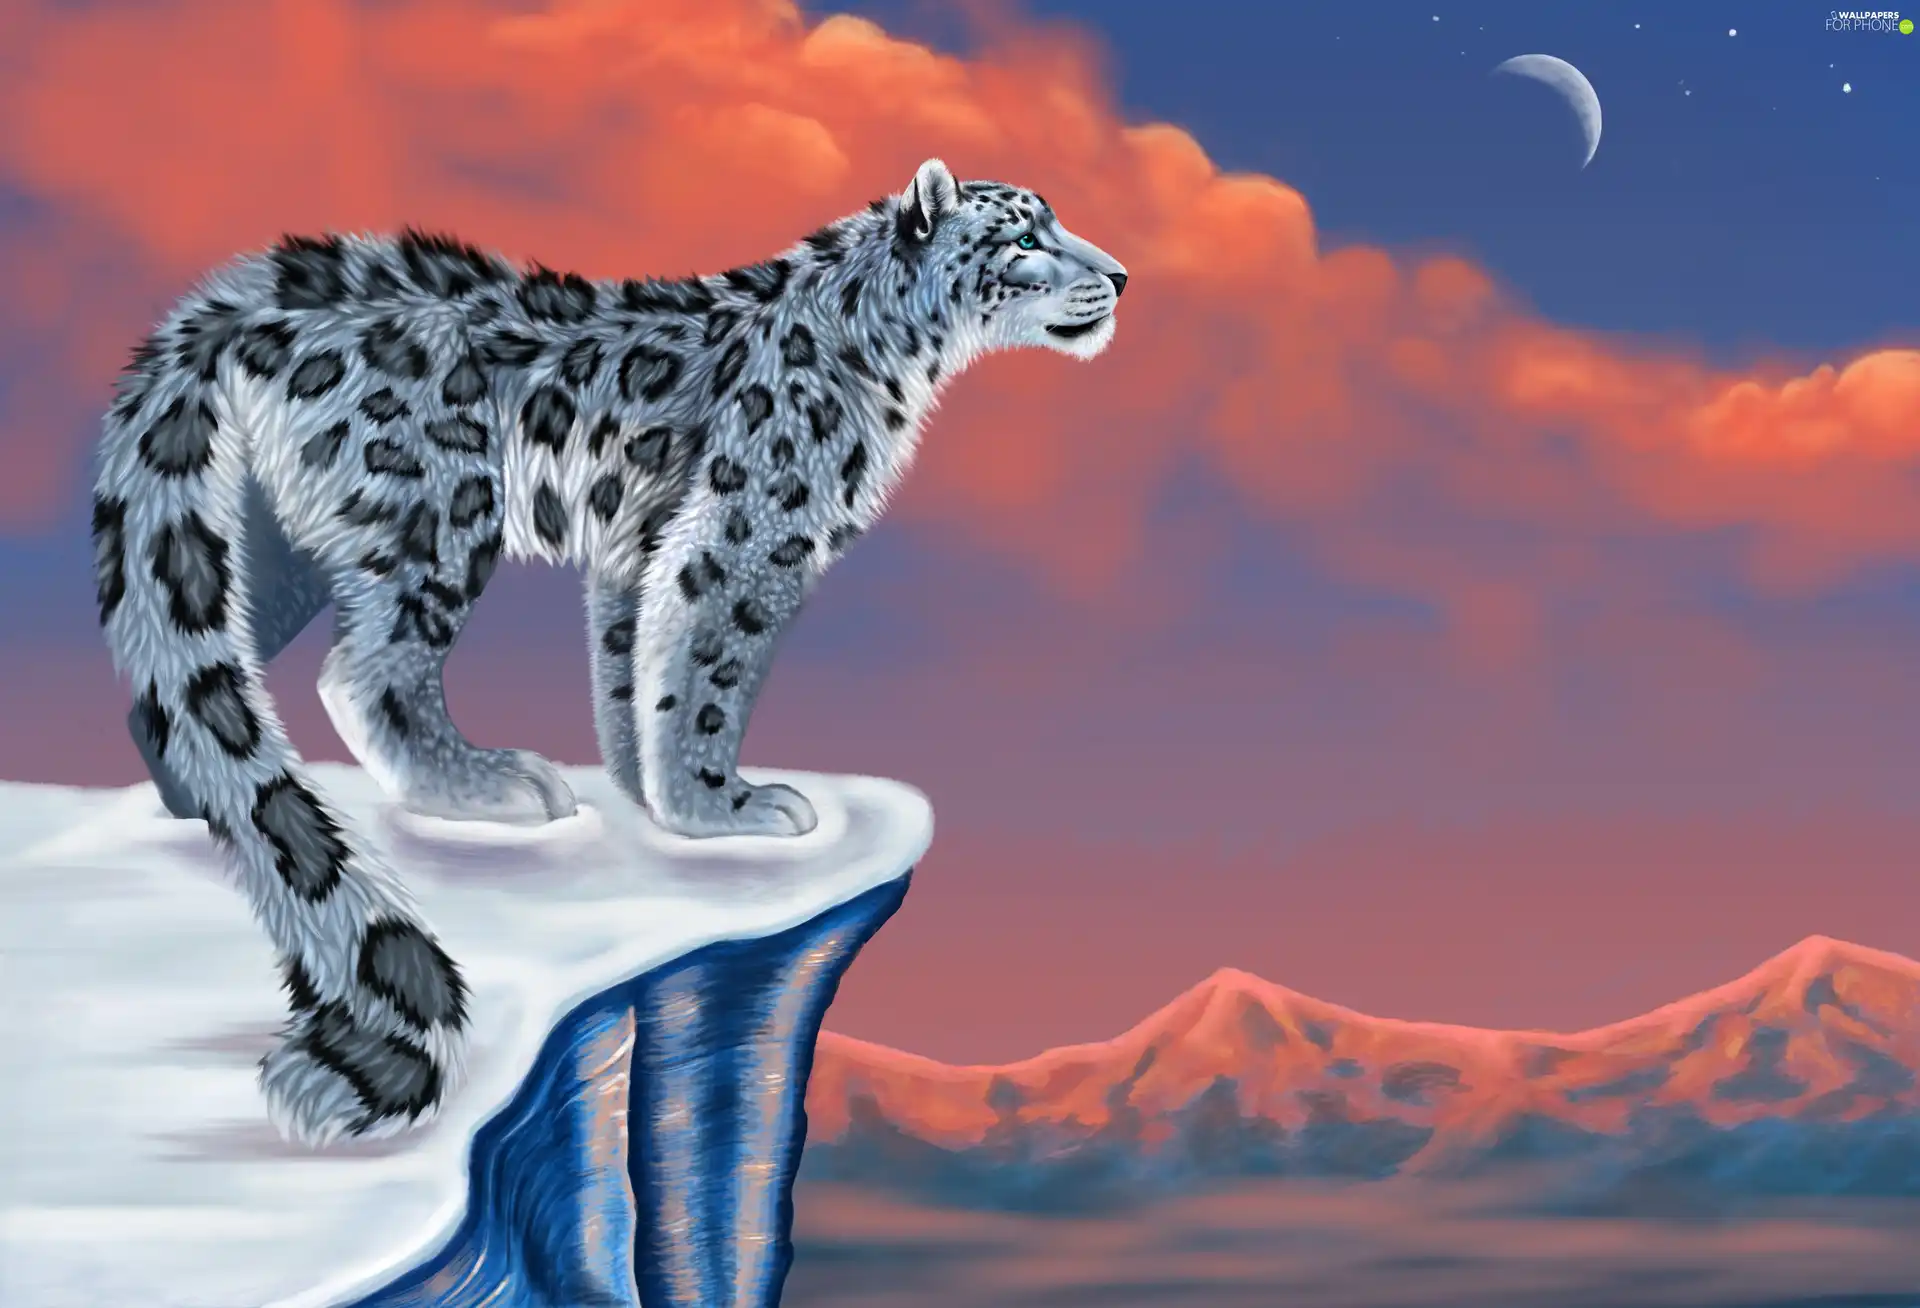 Leopards, moon, Rocks, Sky